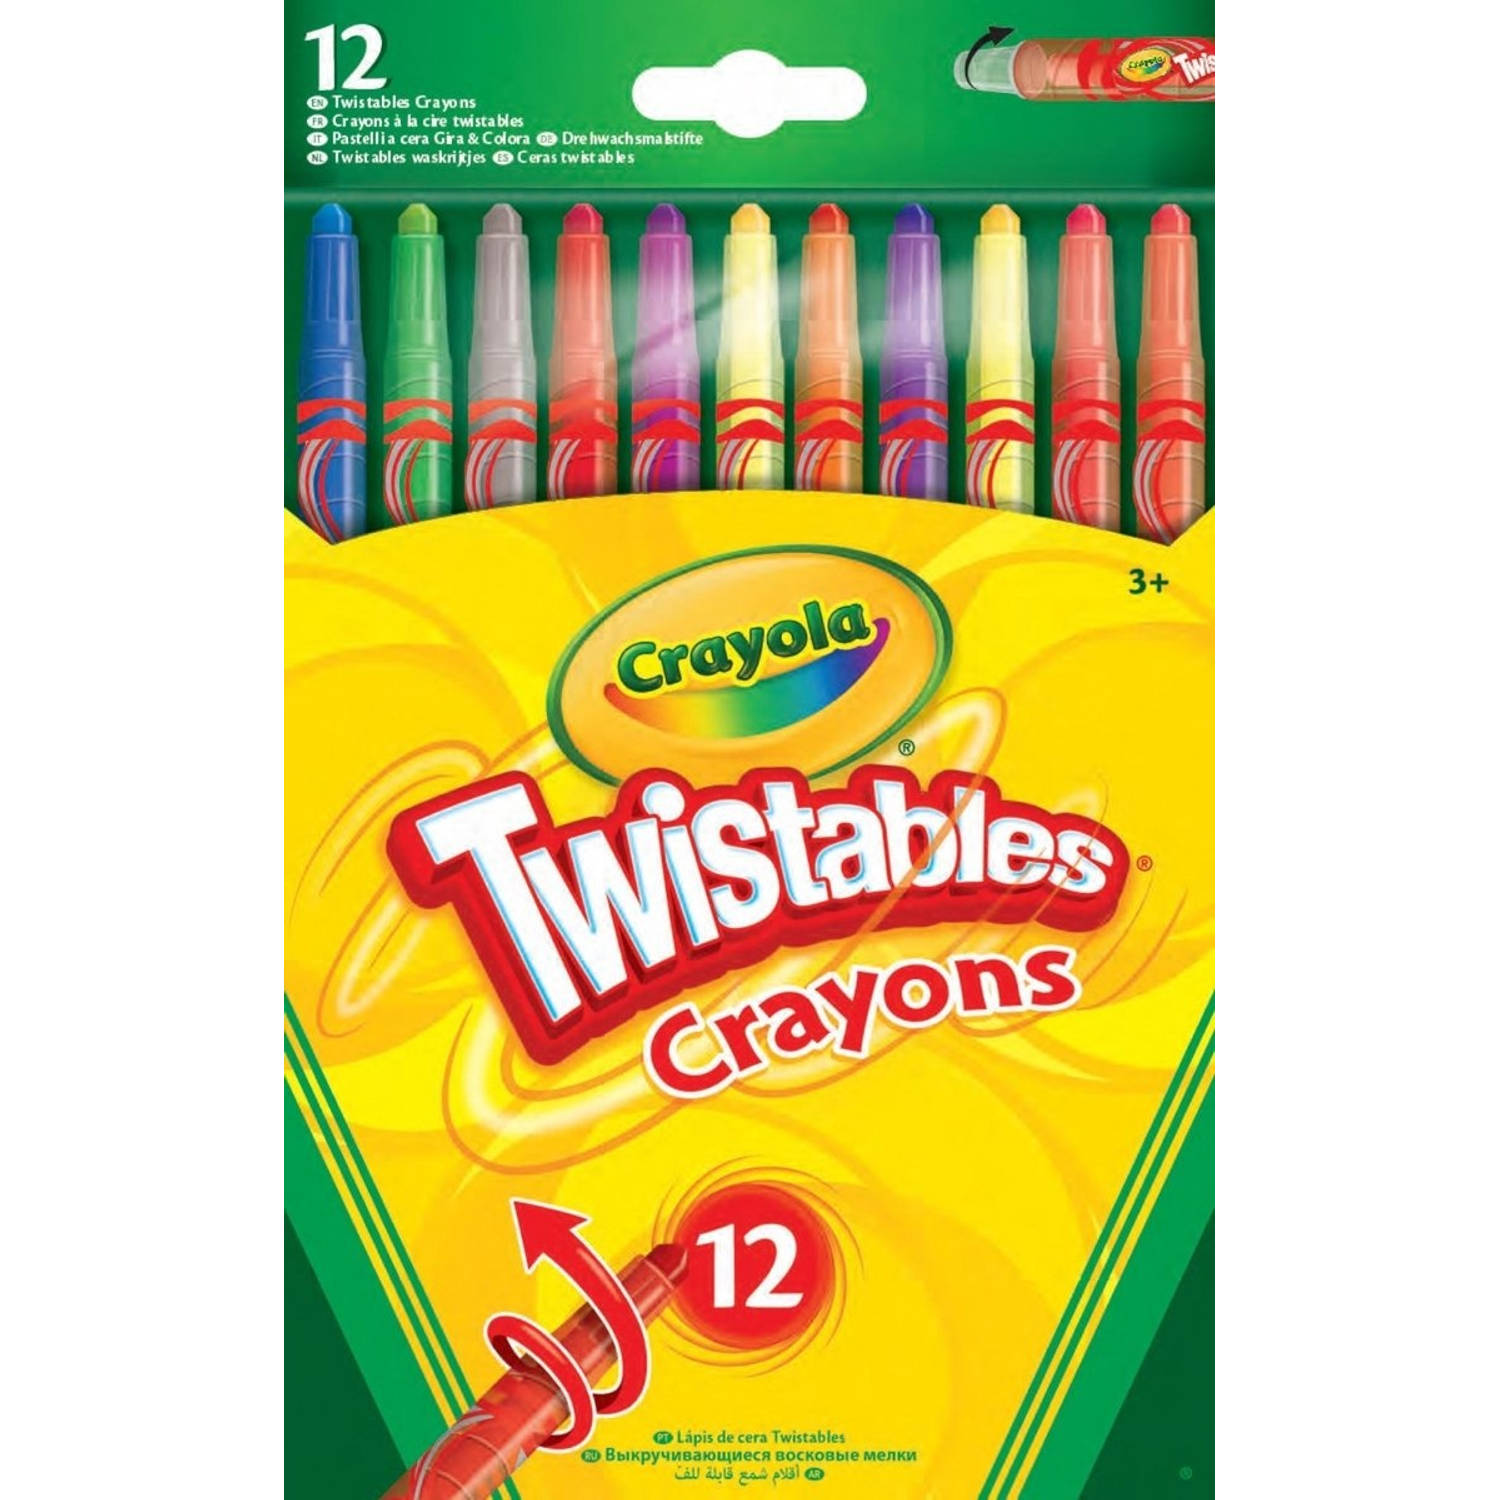 Crayola twisted kleur potloden